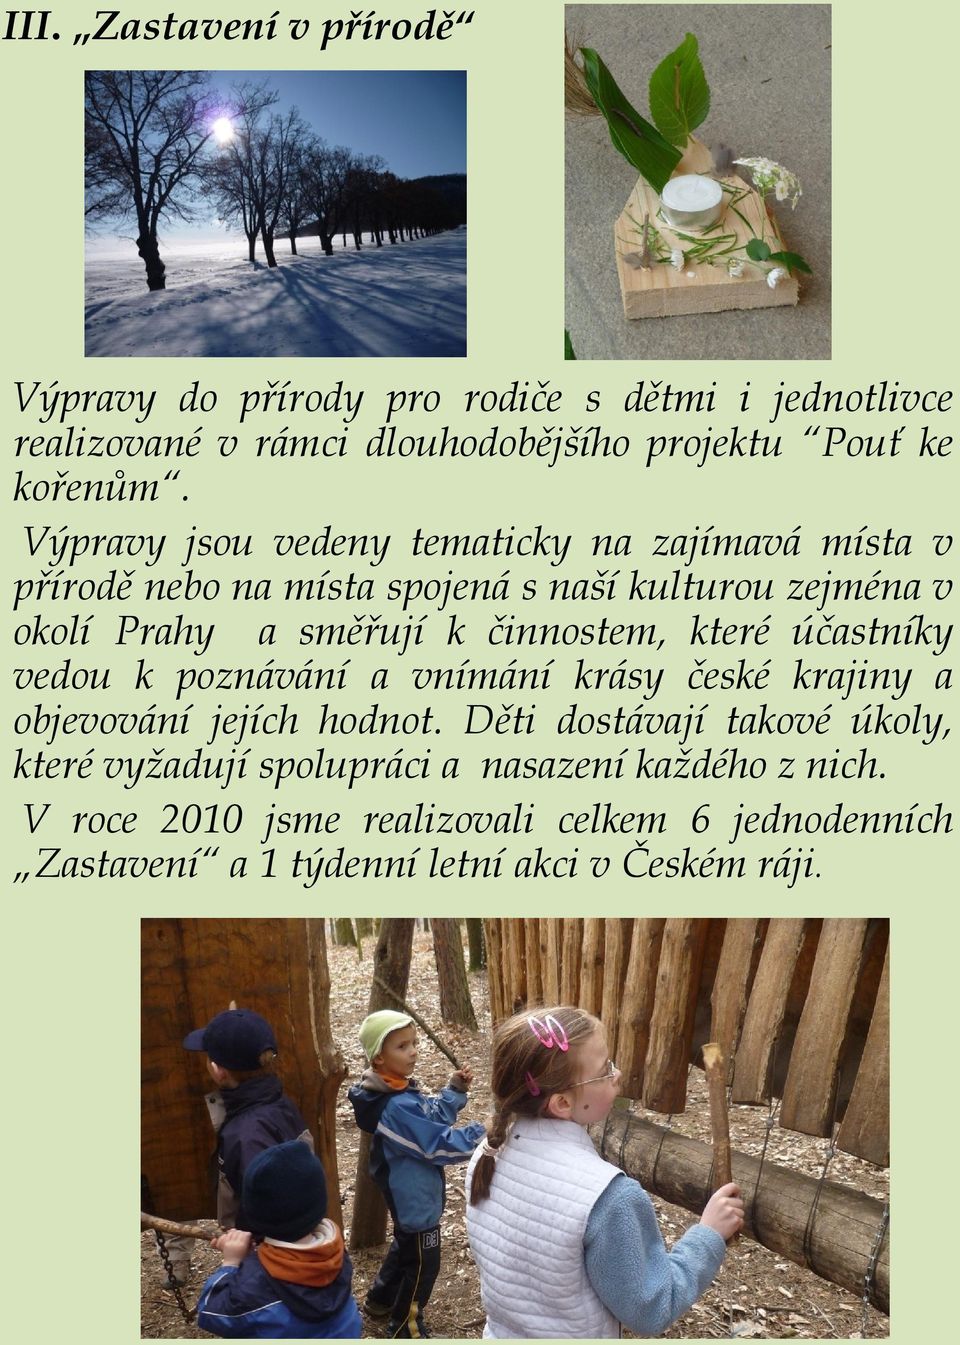 činnostem, které účastníky vedou k poznávání a vnímání krásy české krajiny a objevování jejích hodnot.